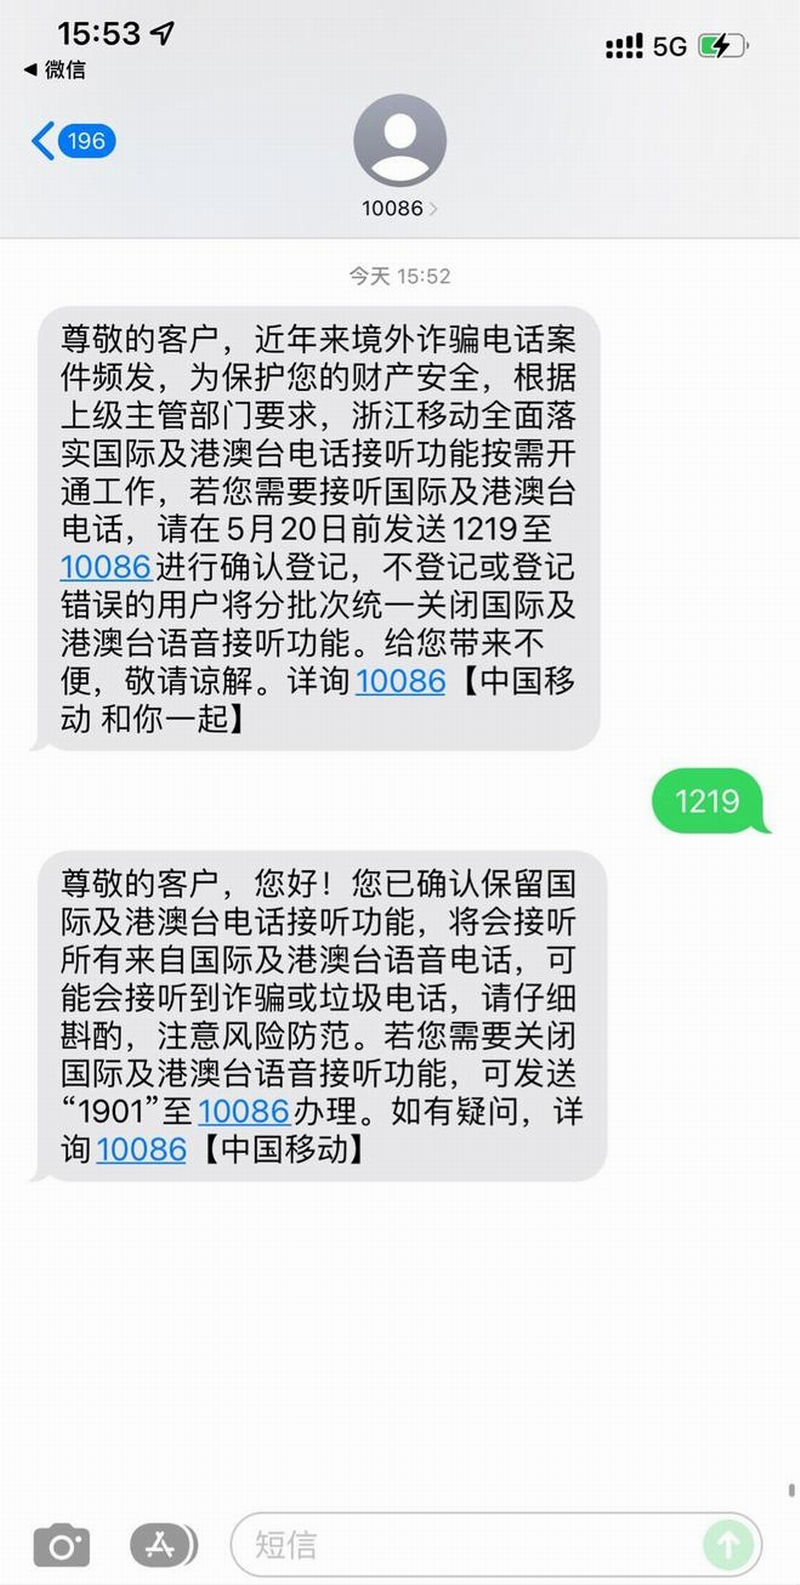 中国移动浙江分公司10086短信发简讯通知客户.png